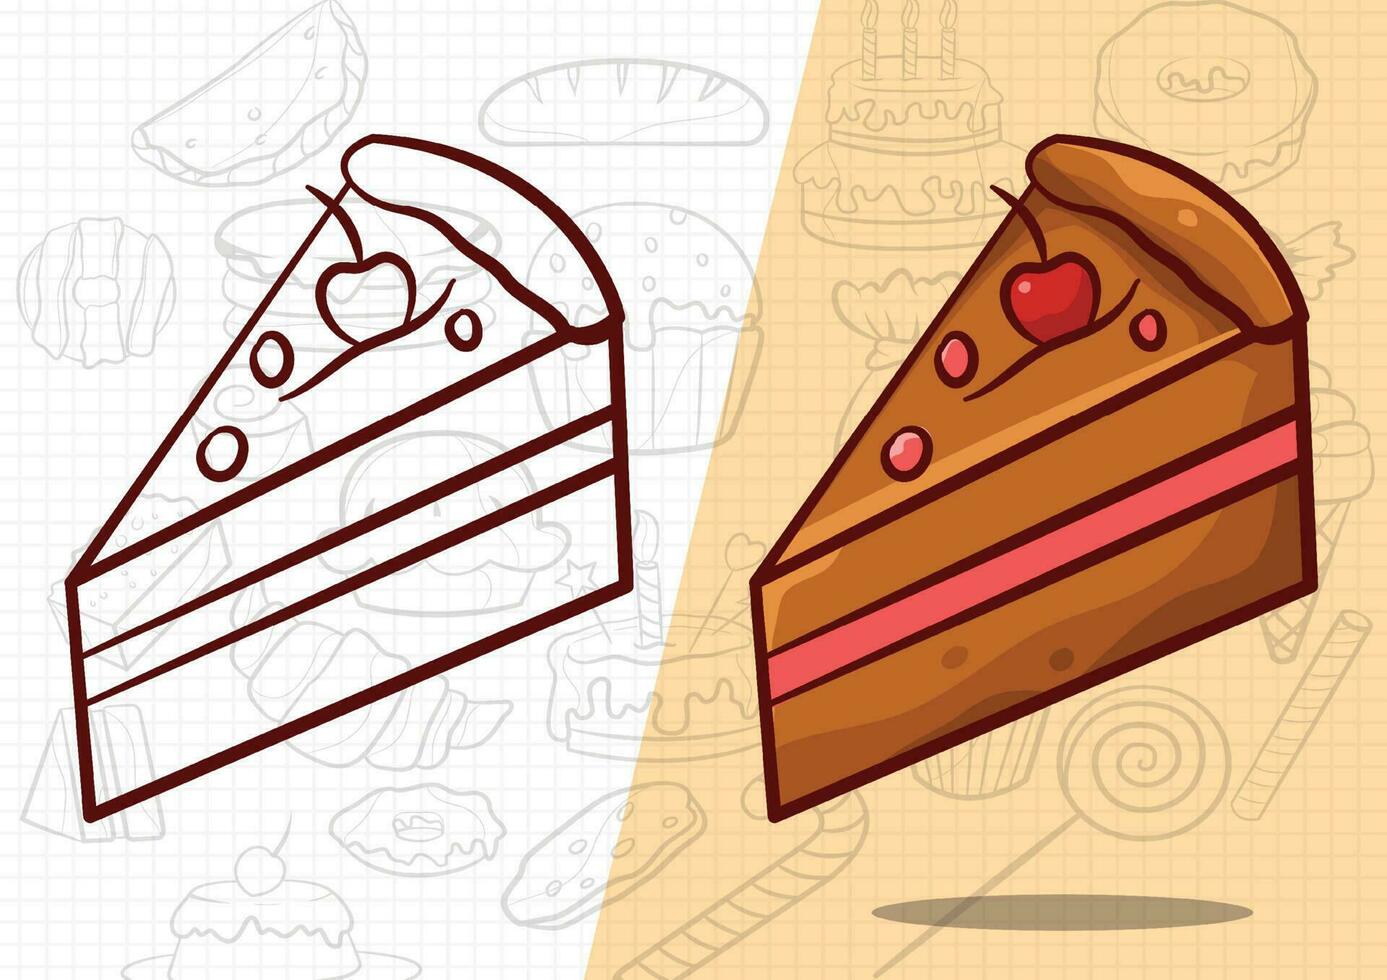 Karikatur Stil Süss und köstlich Kuchen Kunst Illustration vektor